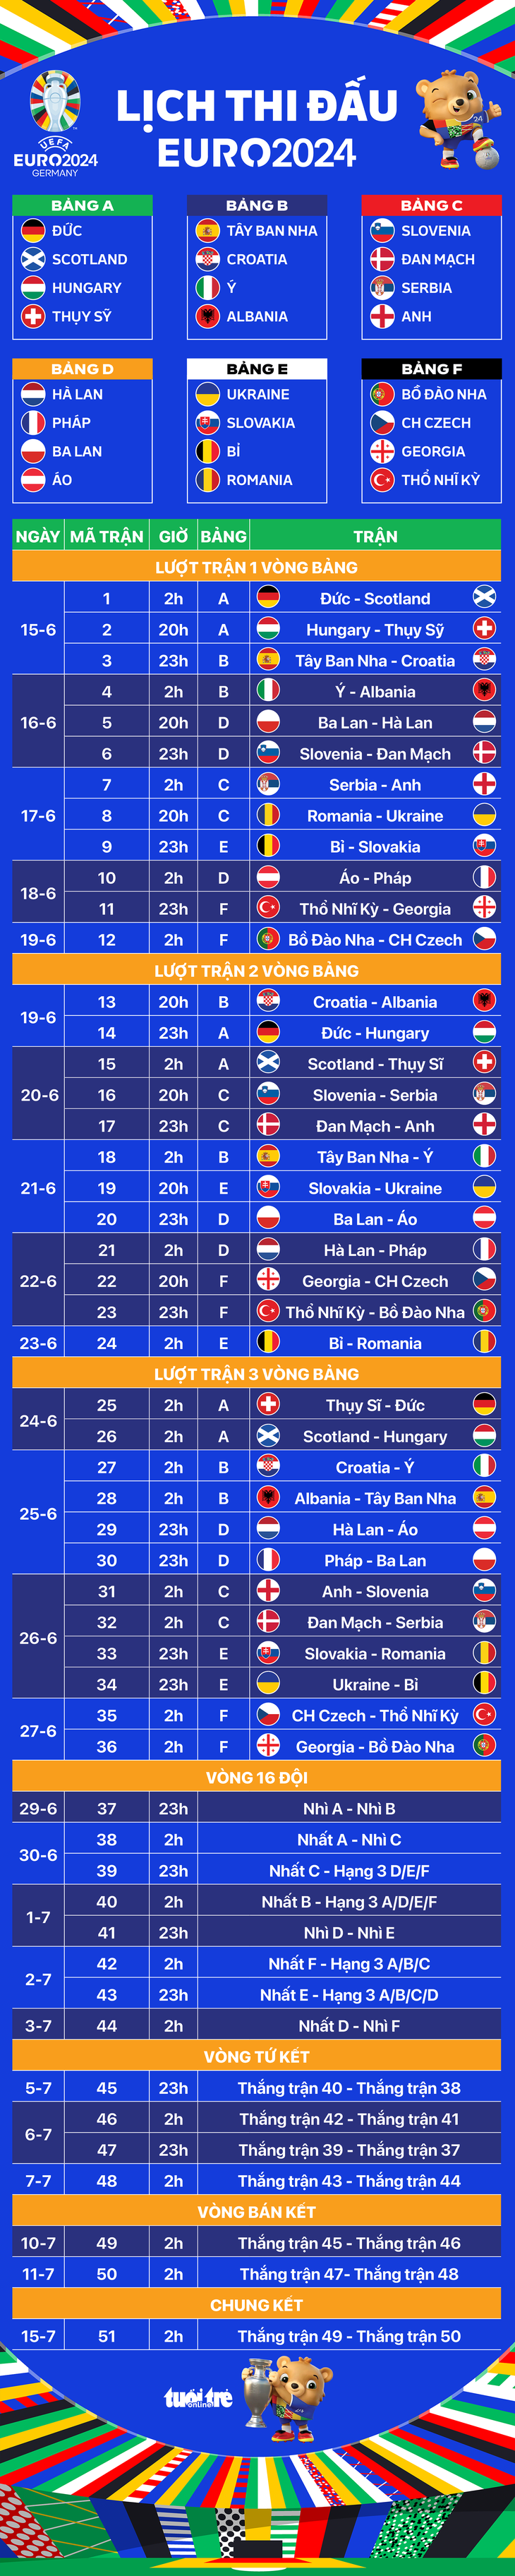 Lịch thi đấu toàn bộ 51 trận ở Euro 2024 - Đồ họa: AN BÌNH